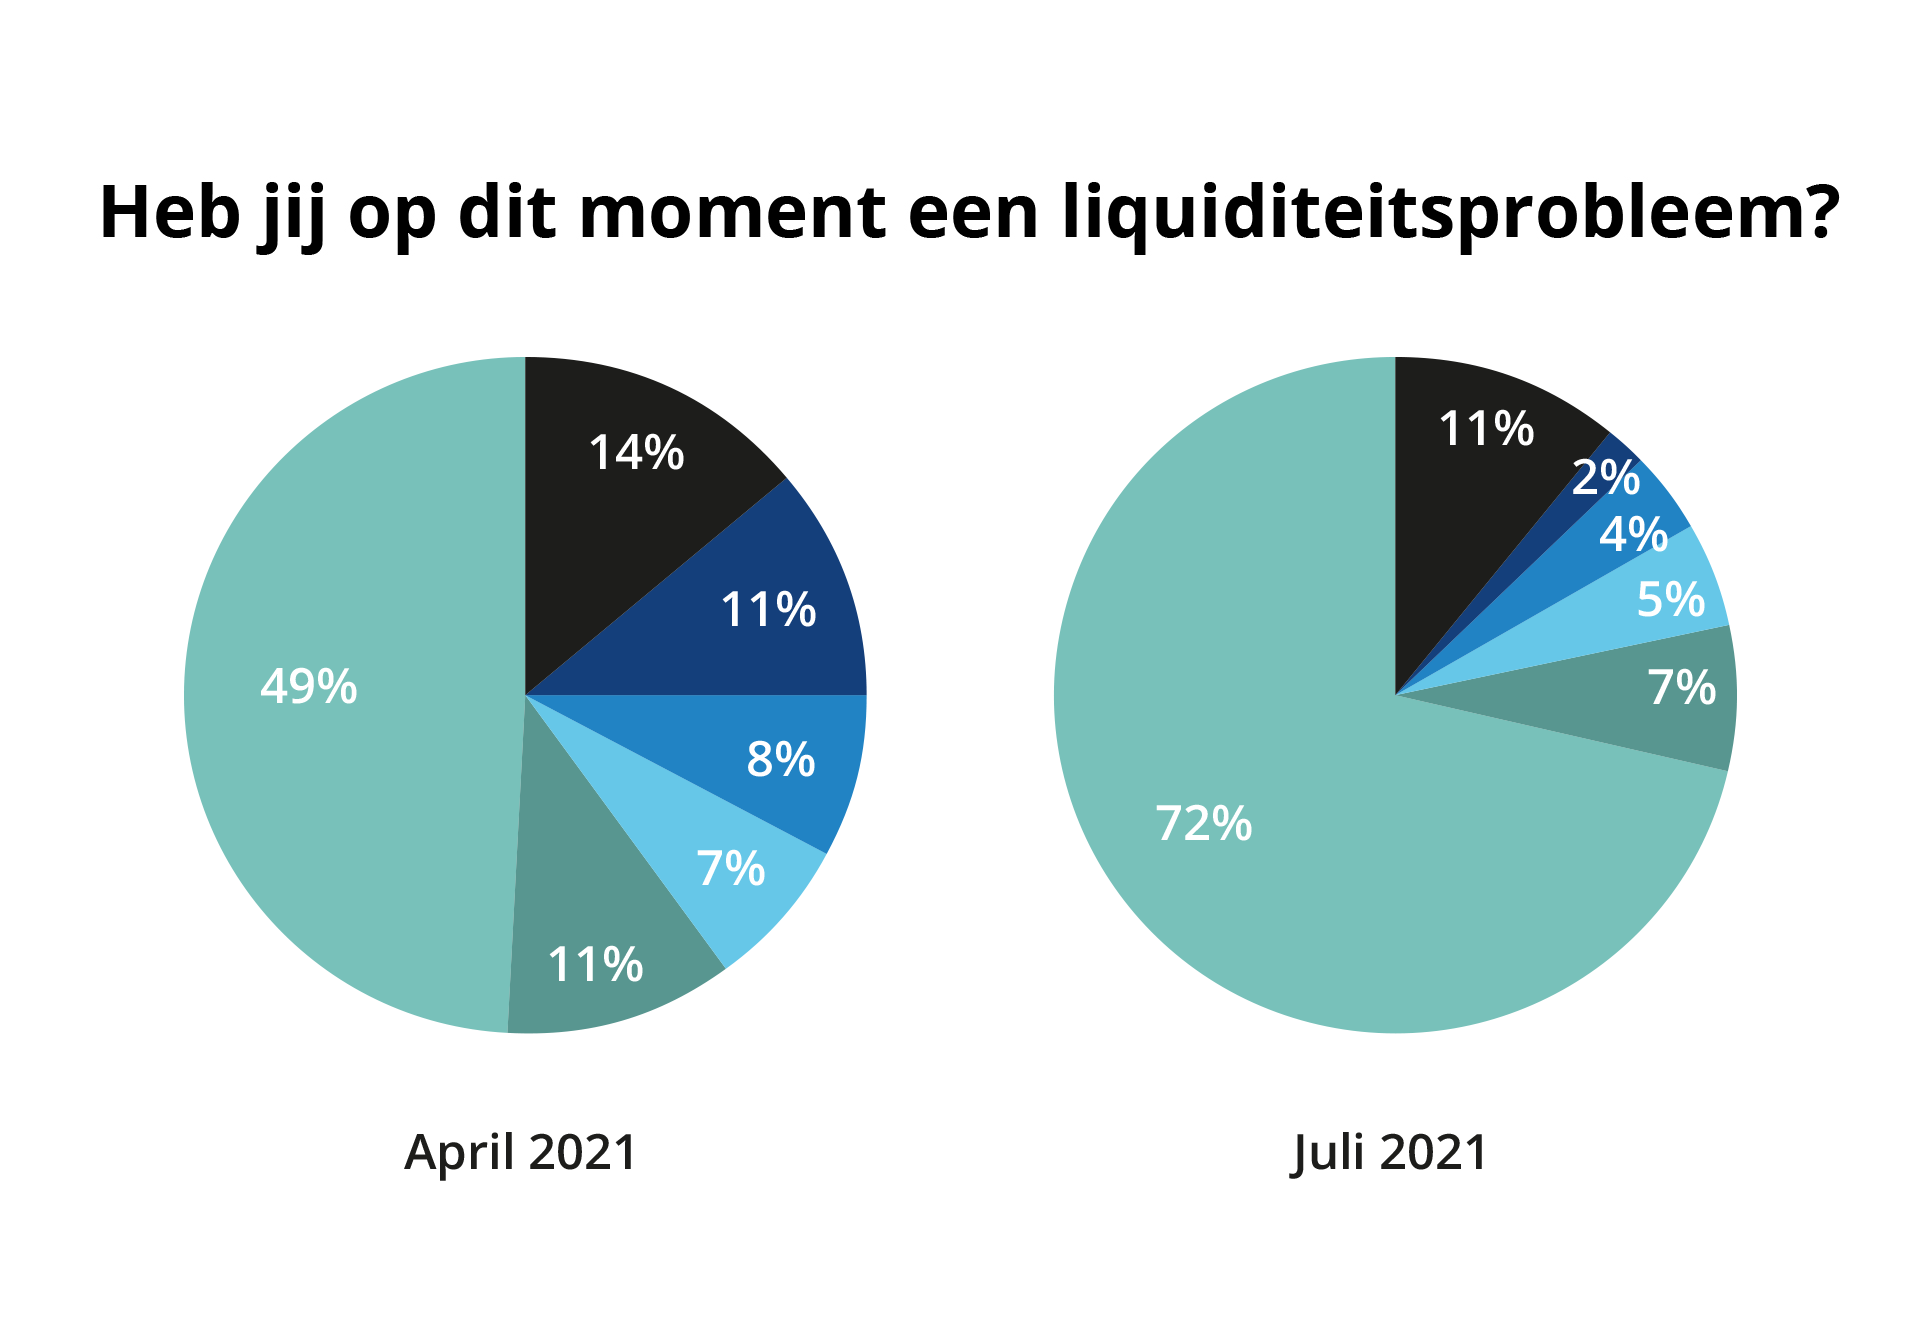 Uitslag peiling 7: Minder urgente liquiditeitsproblemen, 13% wil personeel laten investeren